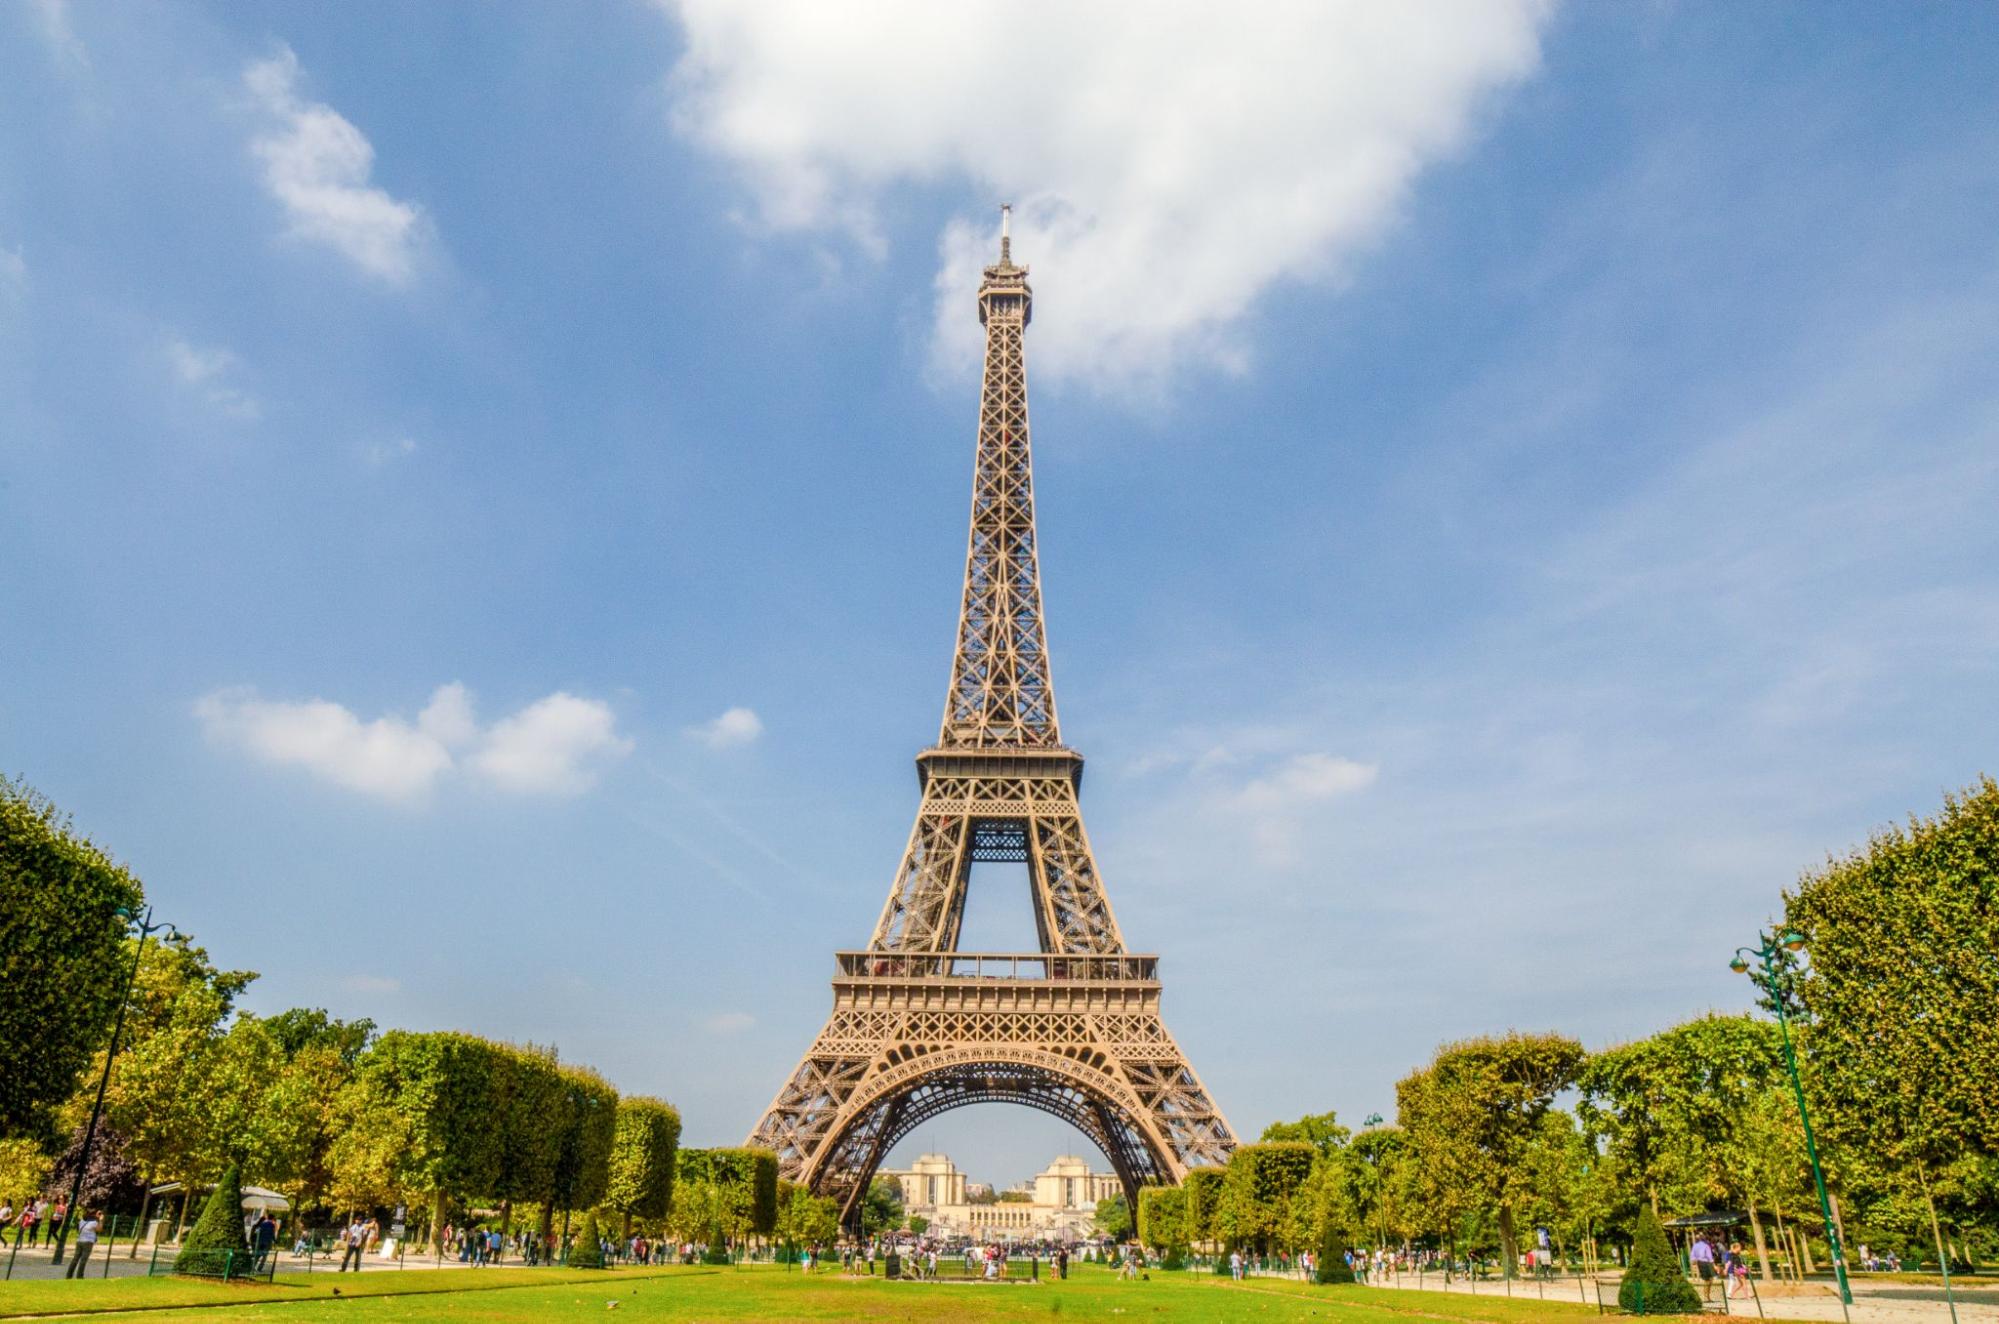 เที่ยวฝรั่งเศส หอไอเฟล (Eiffel Tower)